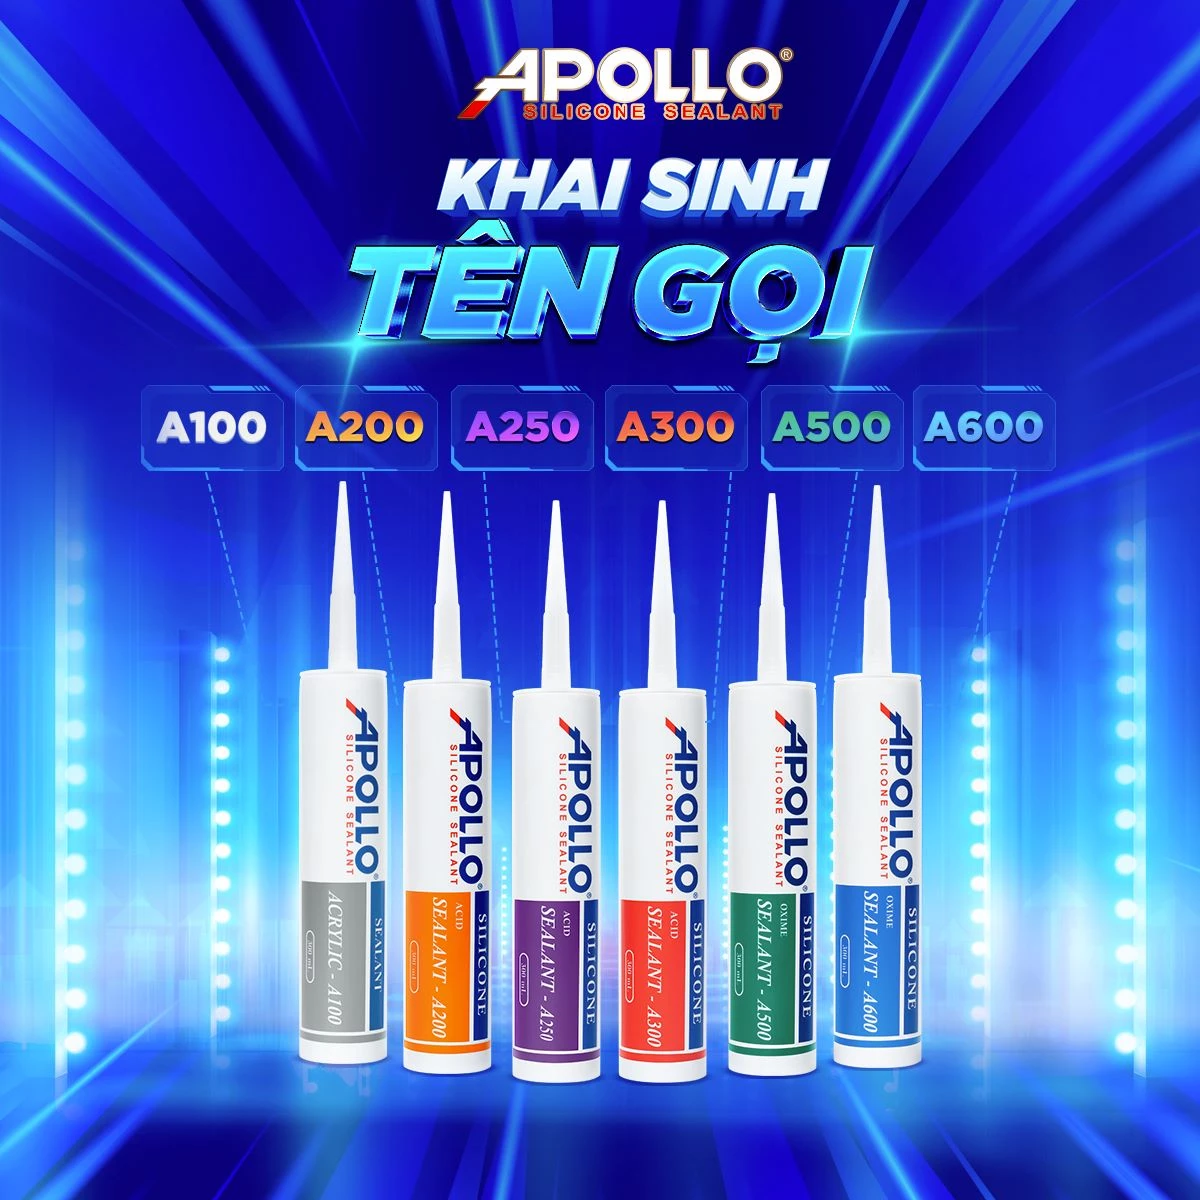 Apollo Silicone - Thương hiệu khai sinh tên gọi cho các dòng chất trám silicone tại thị trường Việt Nam